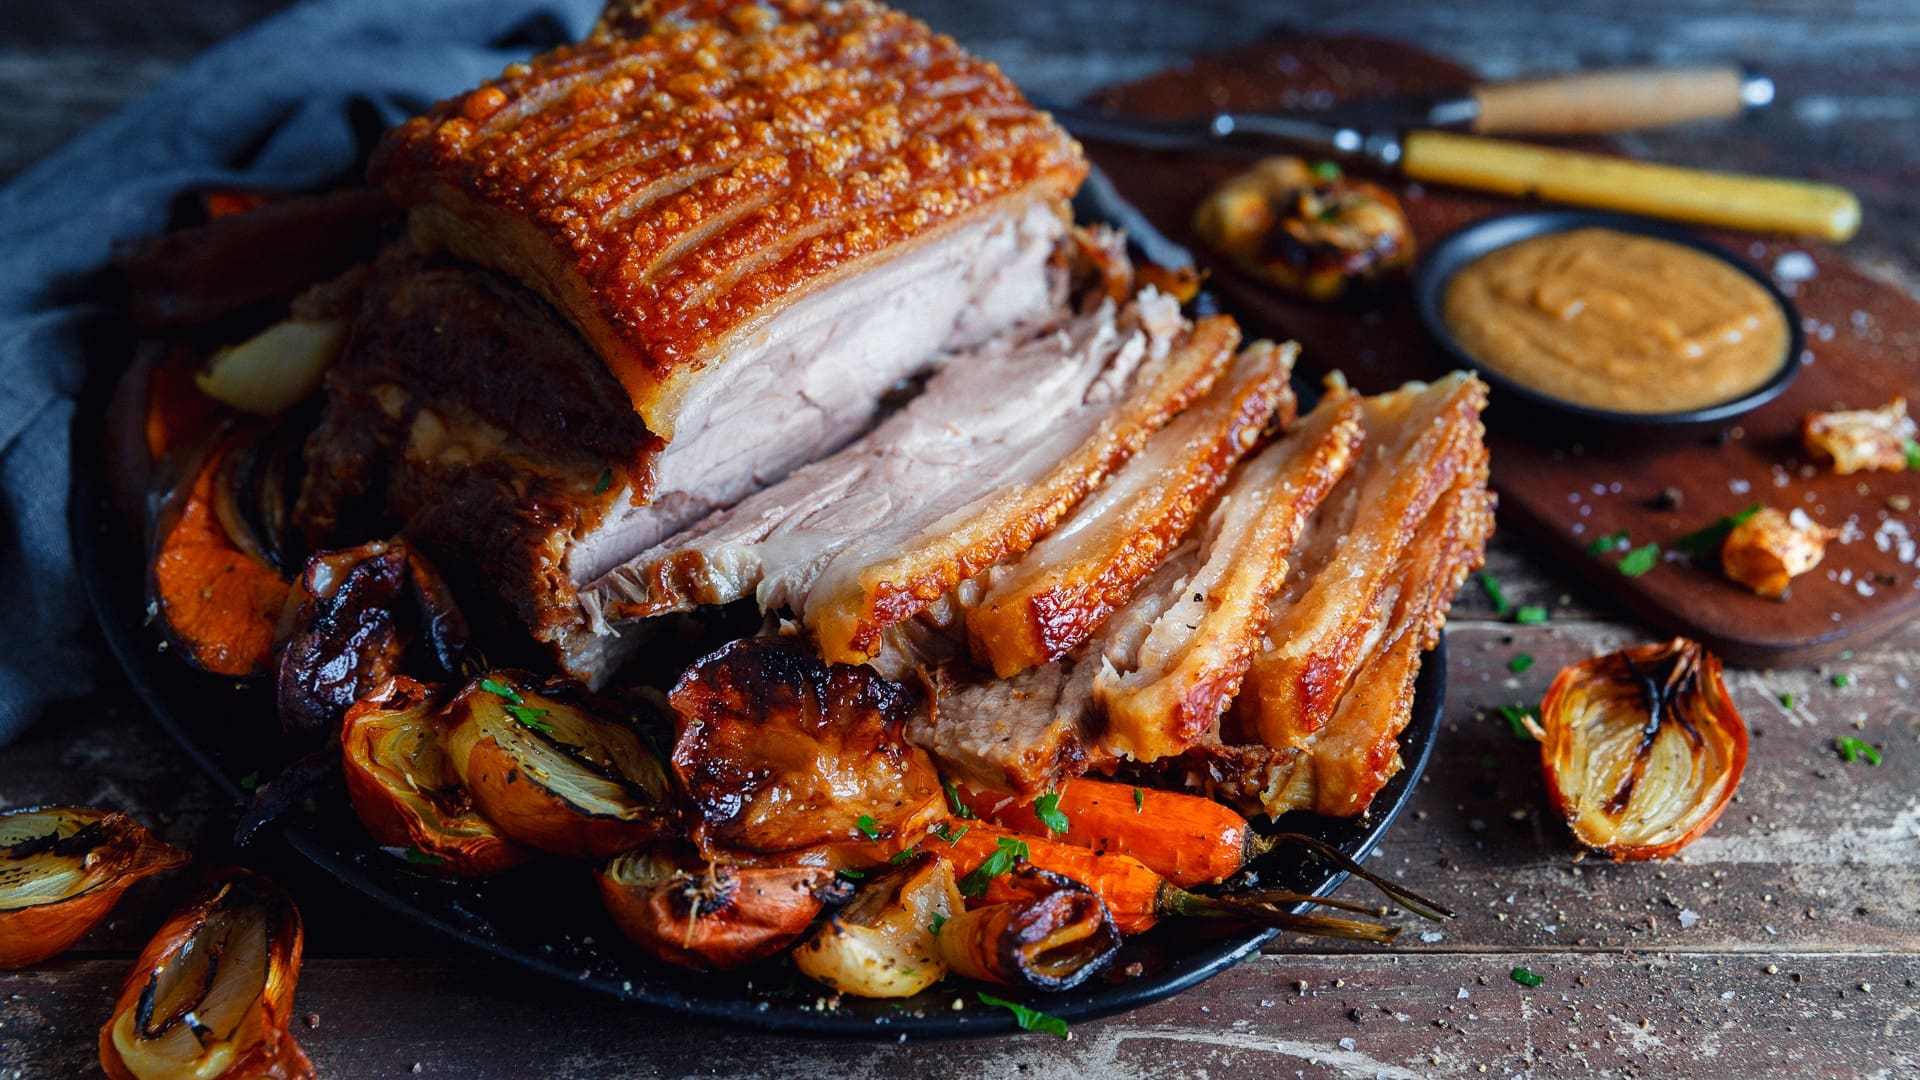 Pork Shoulder Roast